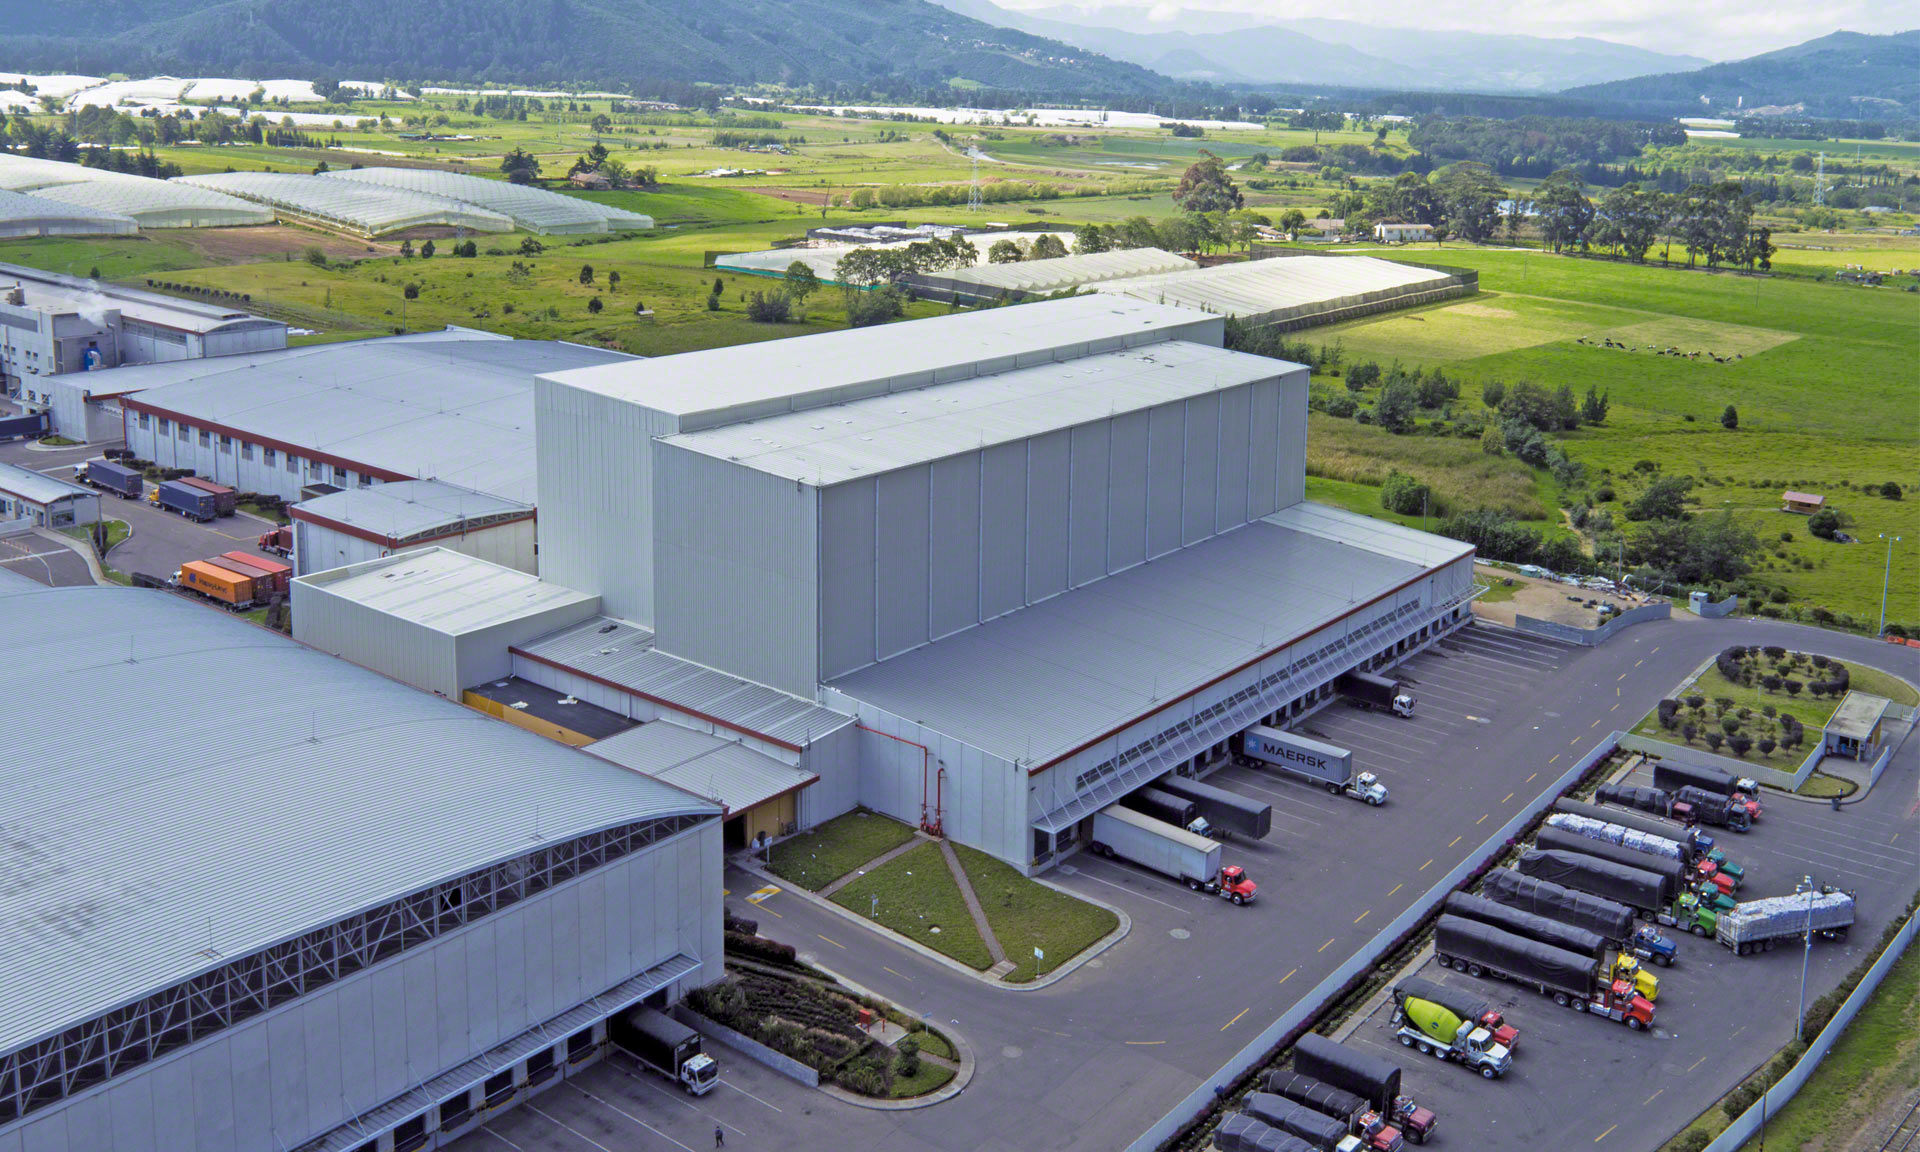 Grupo Familia possède un entrepôt automatique autoportant de 35 mètres de hauteur capable de gérer près de 17 000 palettes